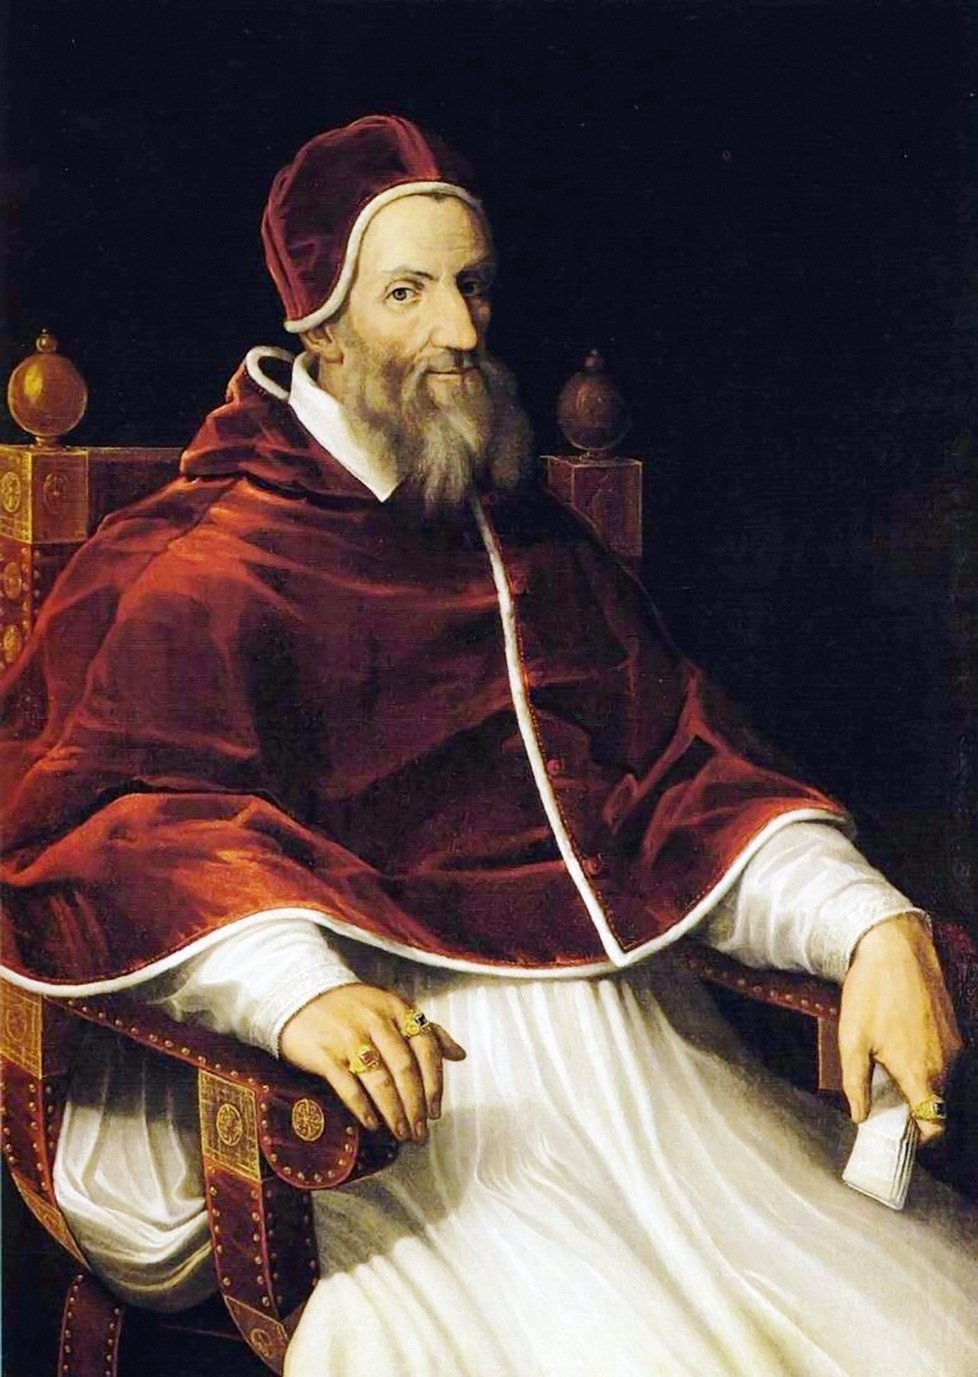 Řehoř XIII., papežem byl v letech 1572–1585. Jako papež se nejvíce zasloužil o rozvoj kuriální diplomacie a reformu kalendáře. Za jeho pontifikátu se také dál rozrůstala inkviziční moc, ale úspěšně se rozvíjela i stavební činnost v Římě. (Wikipedie)